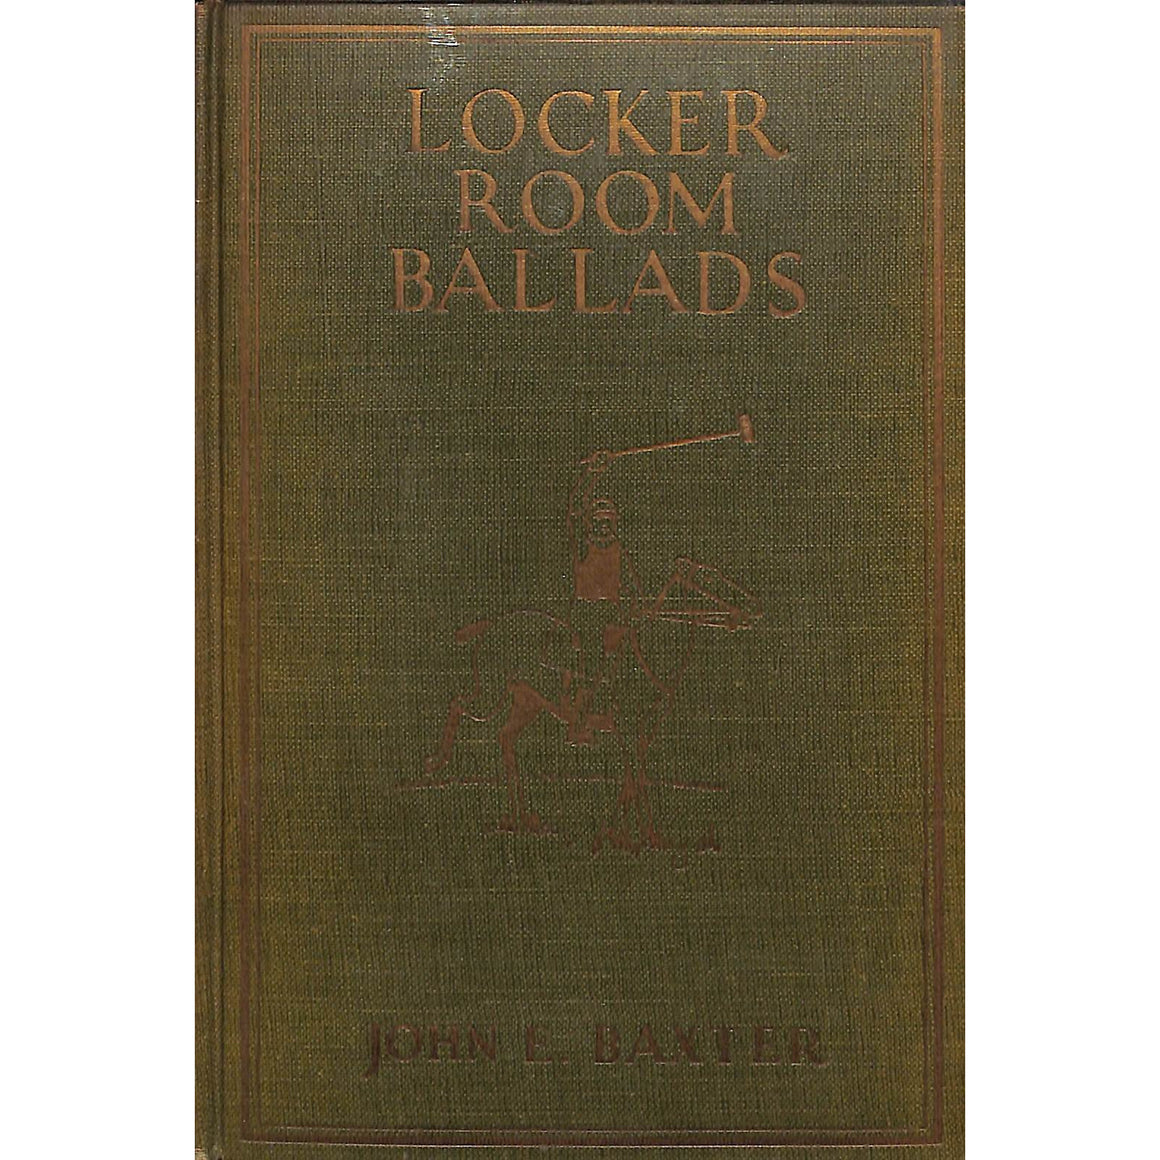 Locker Room Ballads